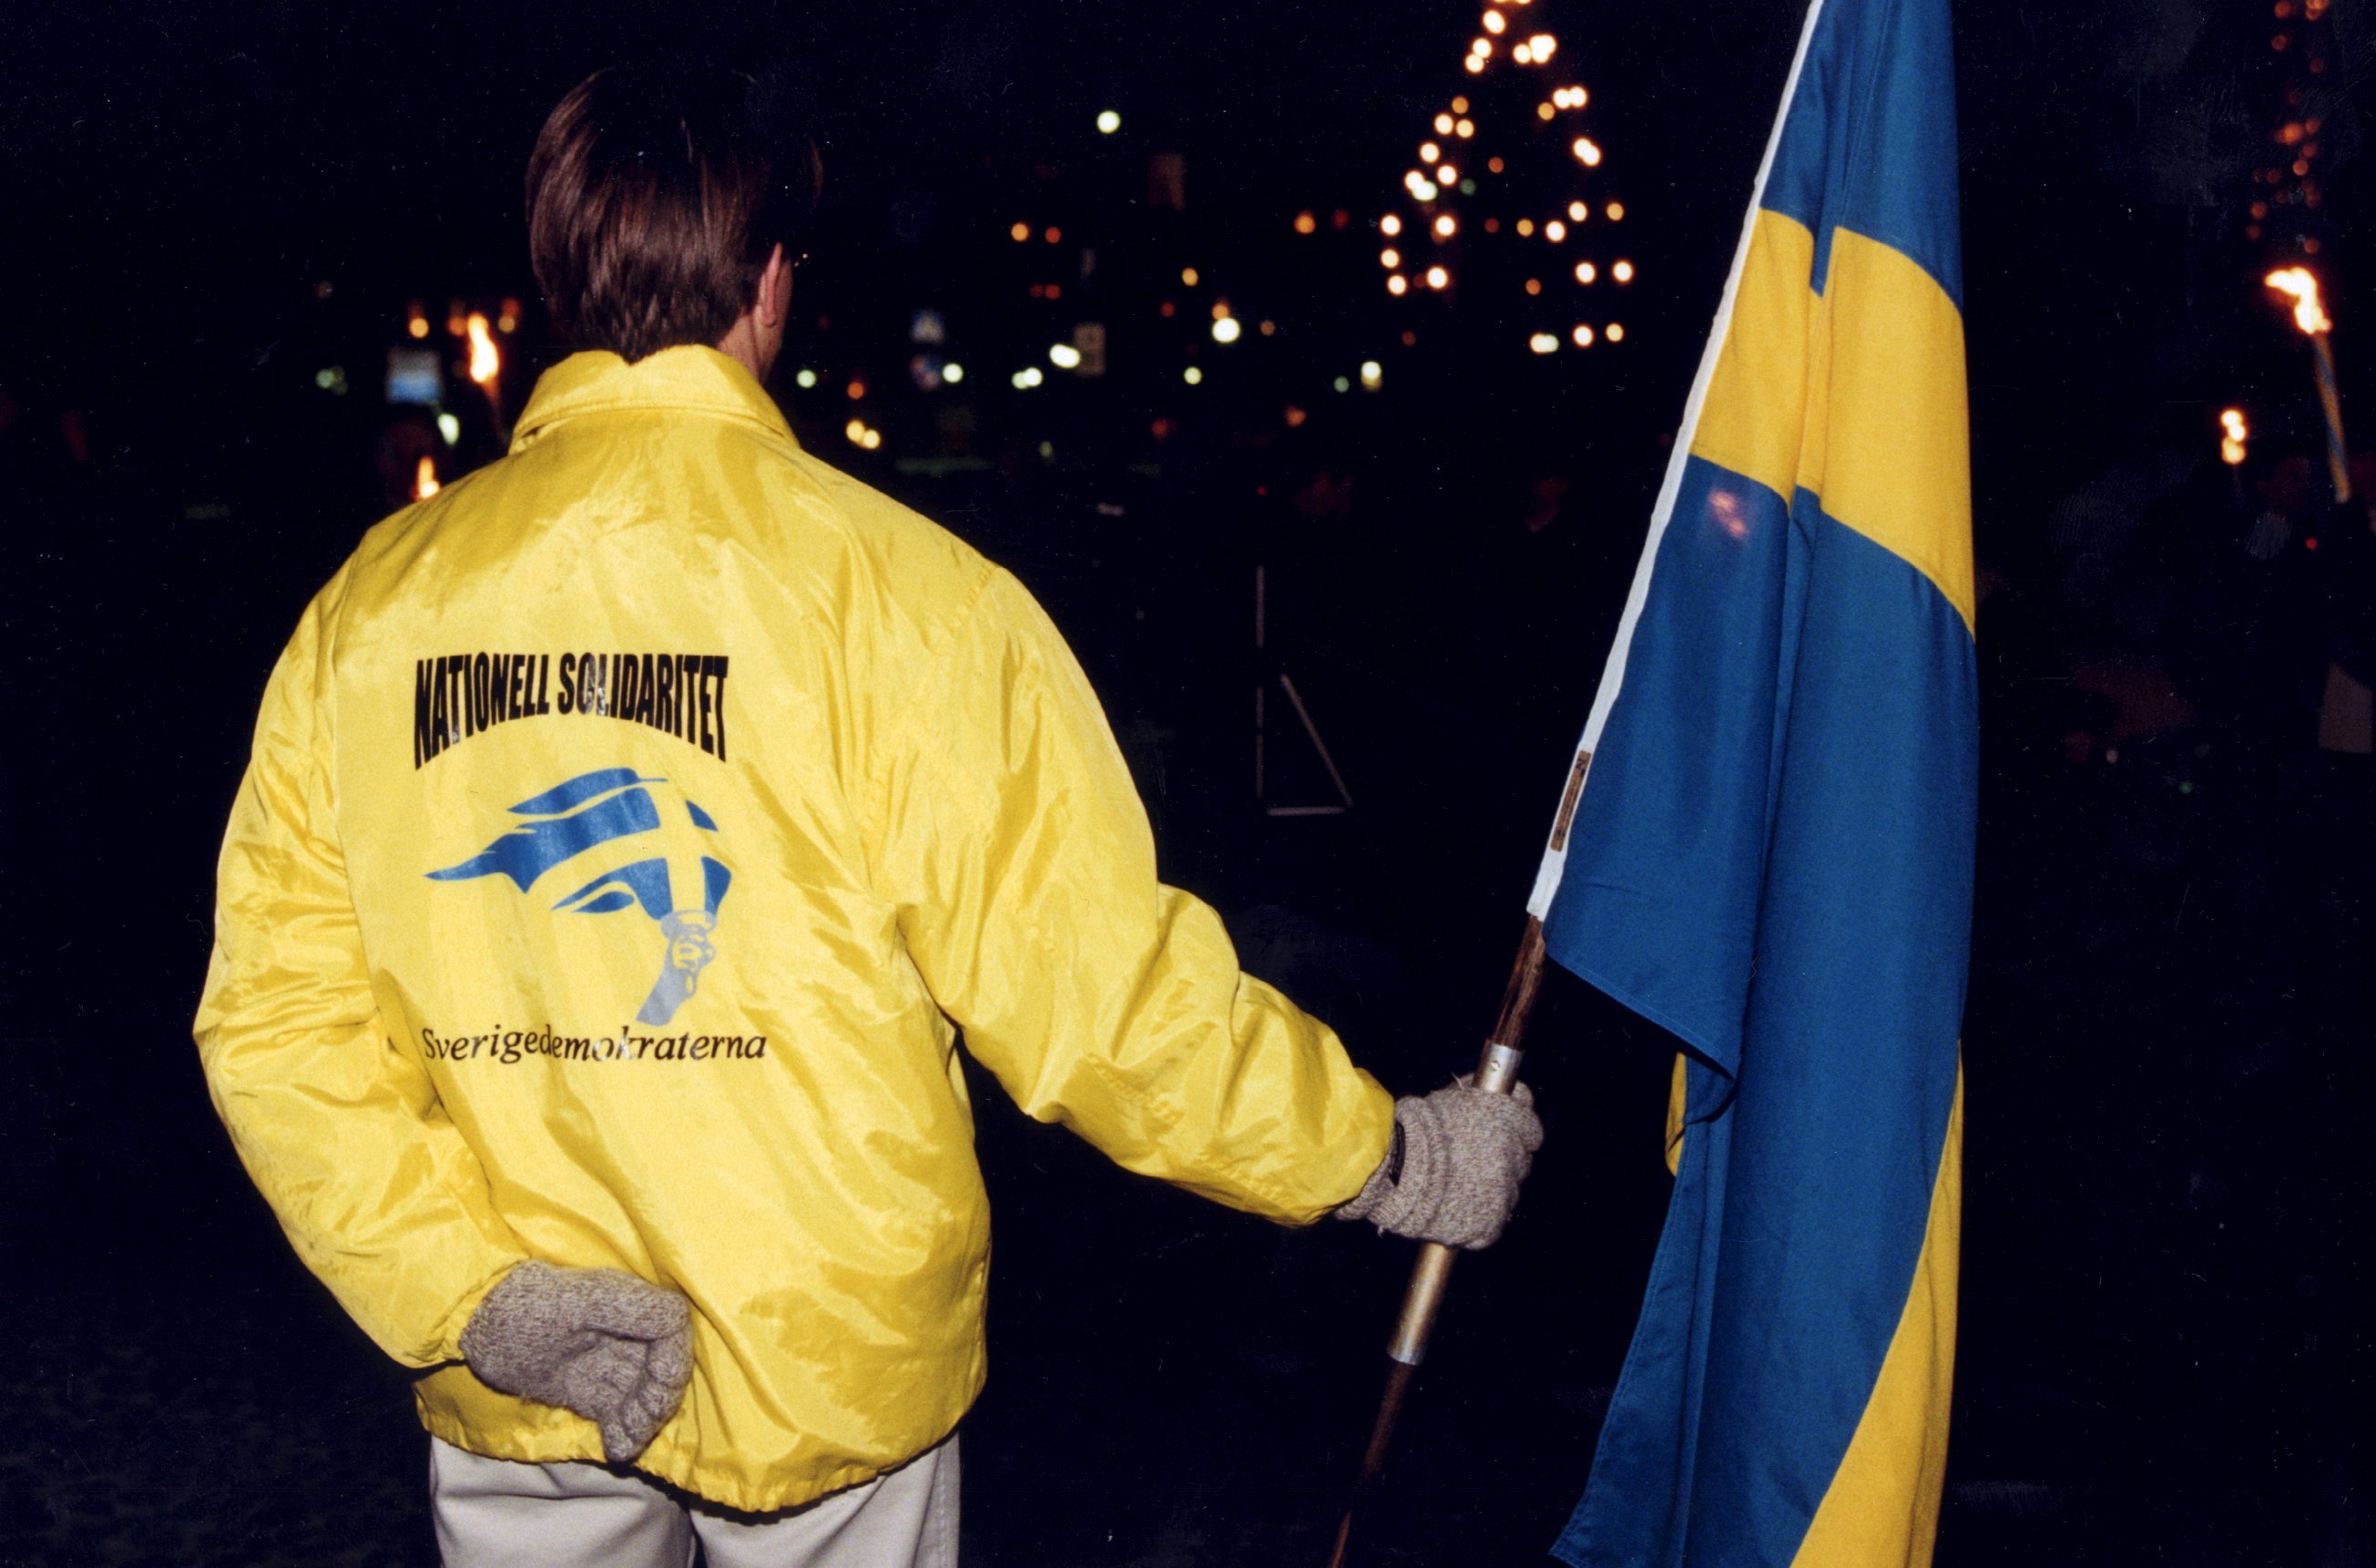 23-åring blev slagen med Sverigeflagga av tre sverigedemokrater på lördagsnatten i centrala Stockholm. 